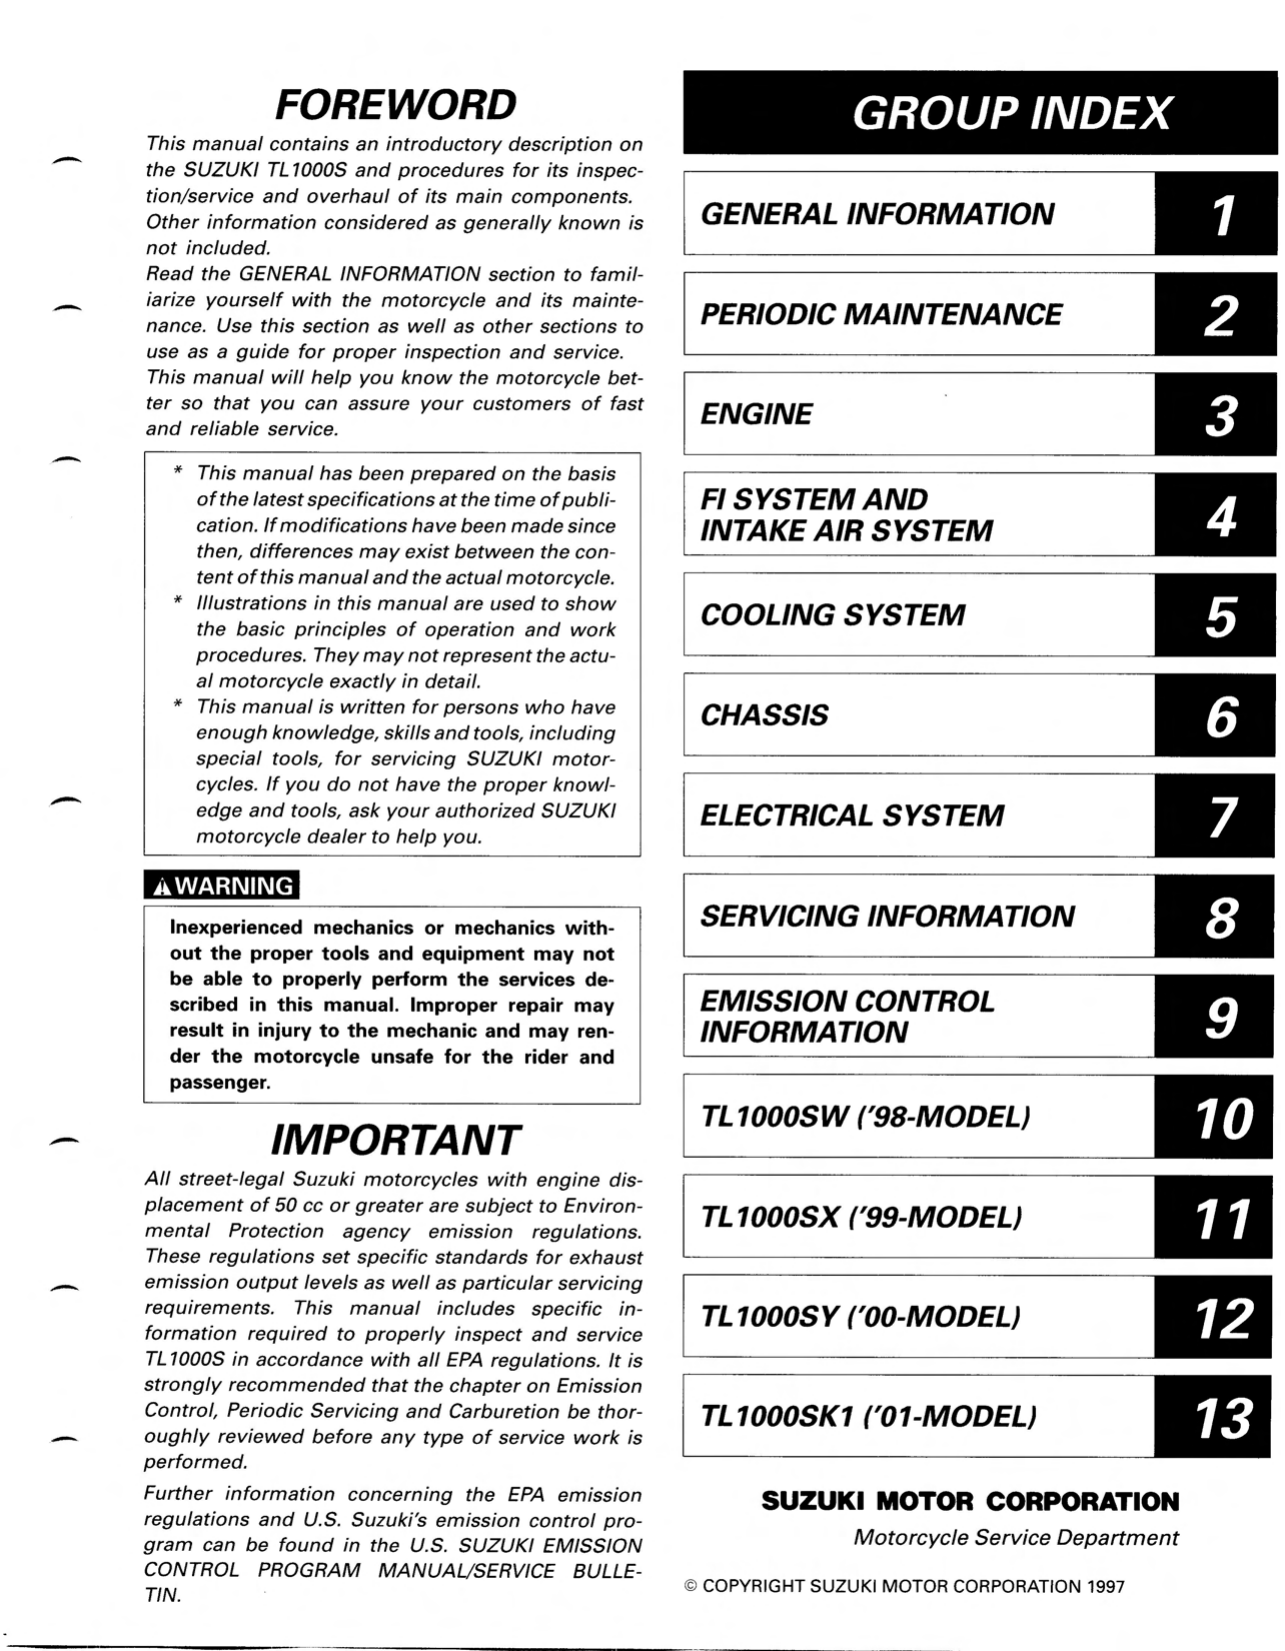 1997-2001 Suzuki TL1000s manual repair and service manual Preview image 2